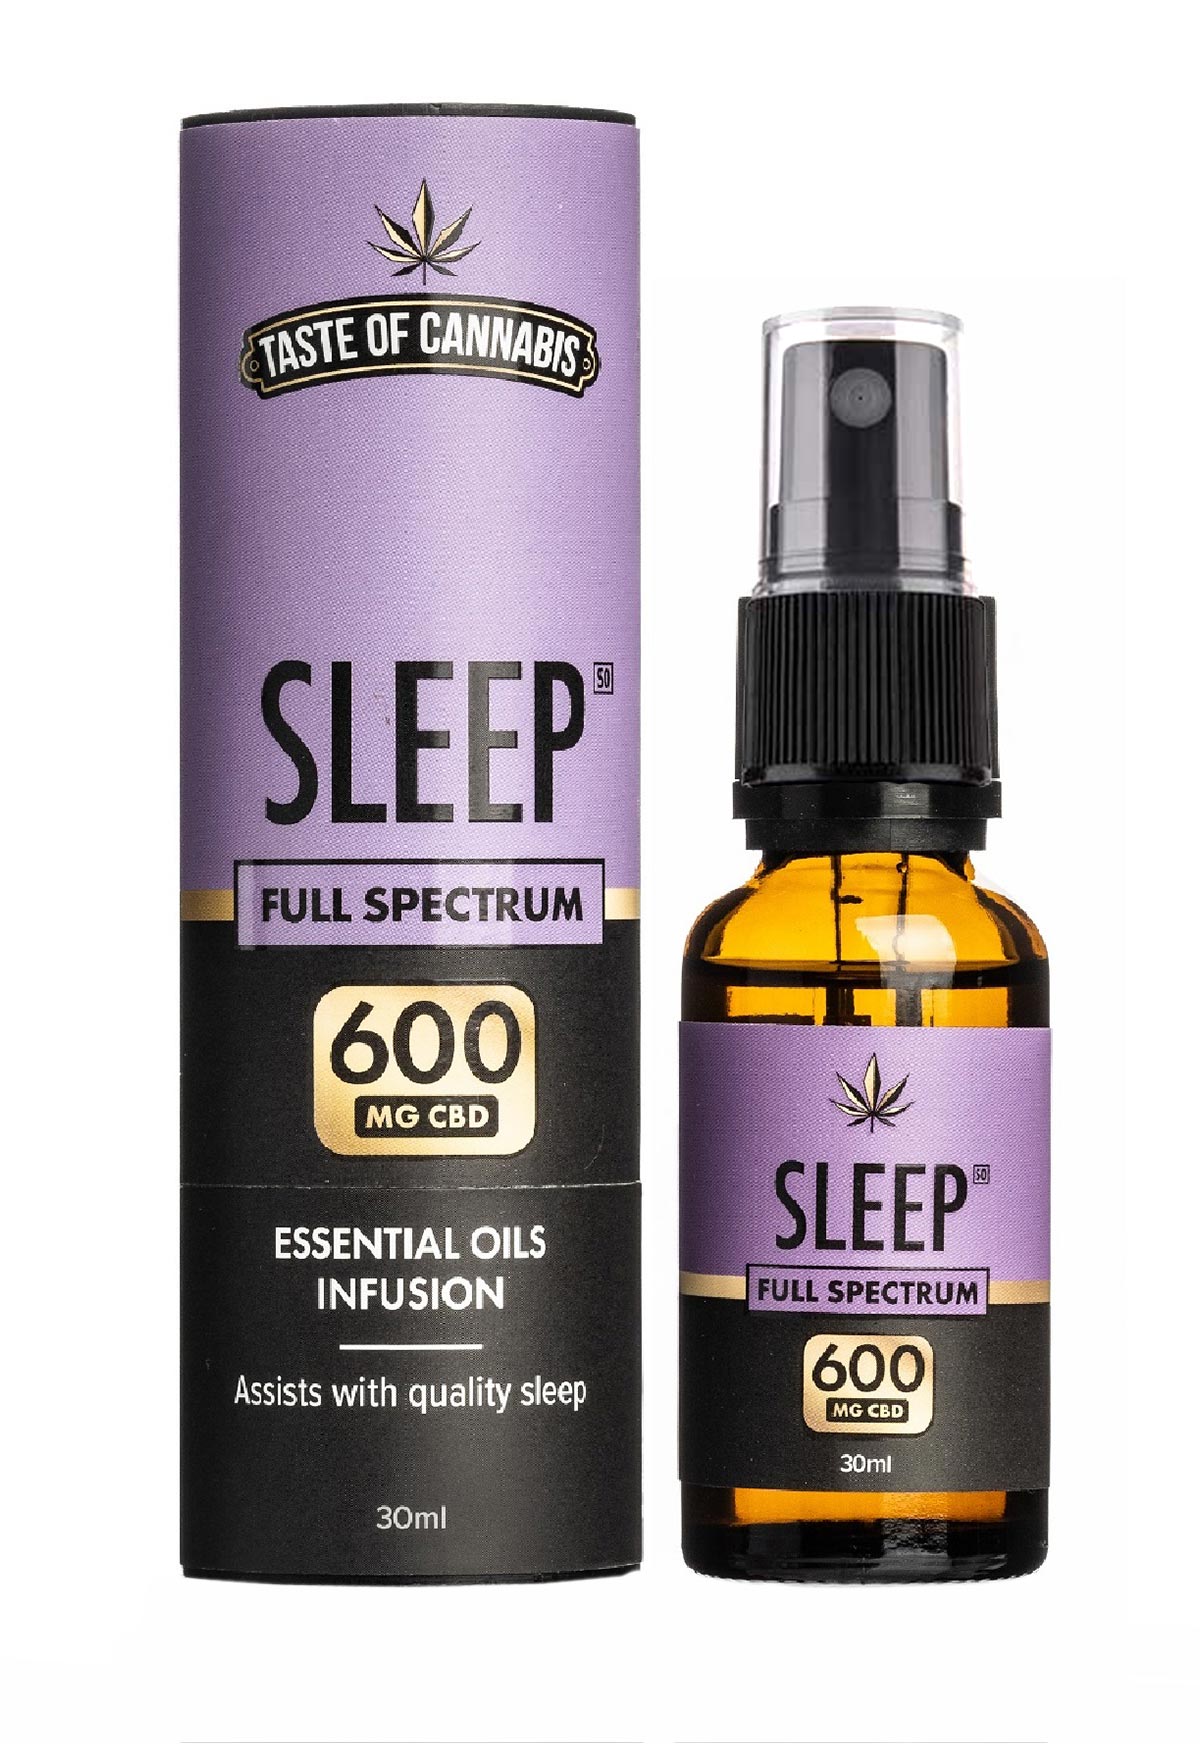 Taste of Cannabis Sleep CBD Oil – Full Spectrum